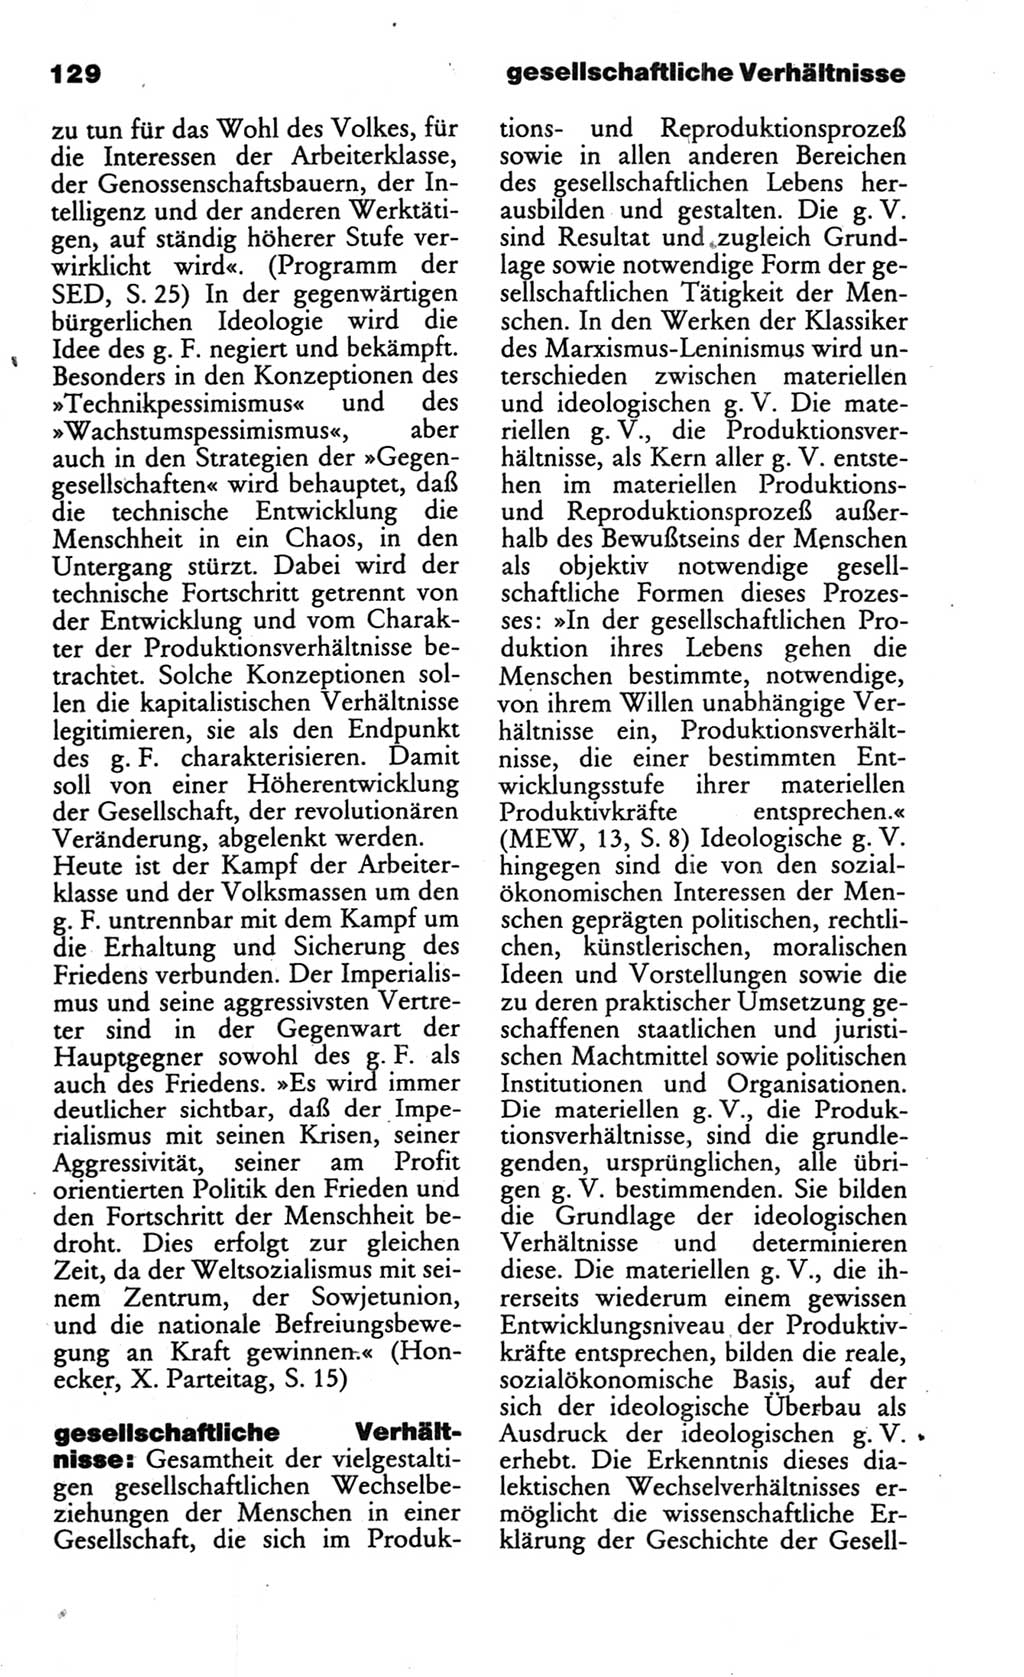 Wörterbuch des wissenschaftlichen Kommunismus [Deutsche Demokratische Republik (DDR)] 1986, Seite 129 (Wb. wiss. Komm. DDR 1986, S. 129)